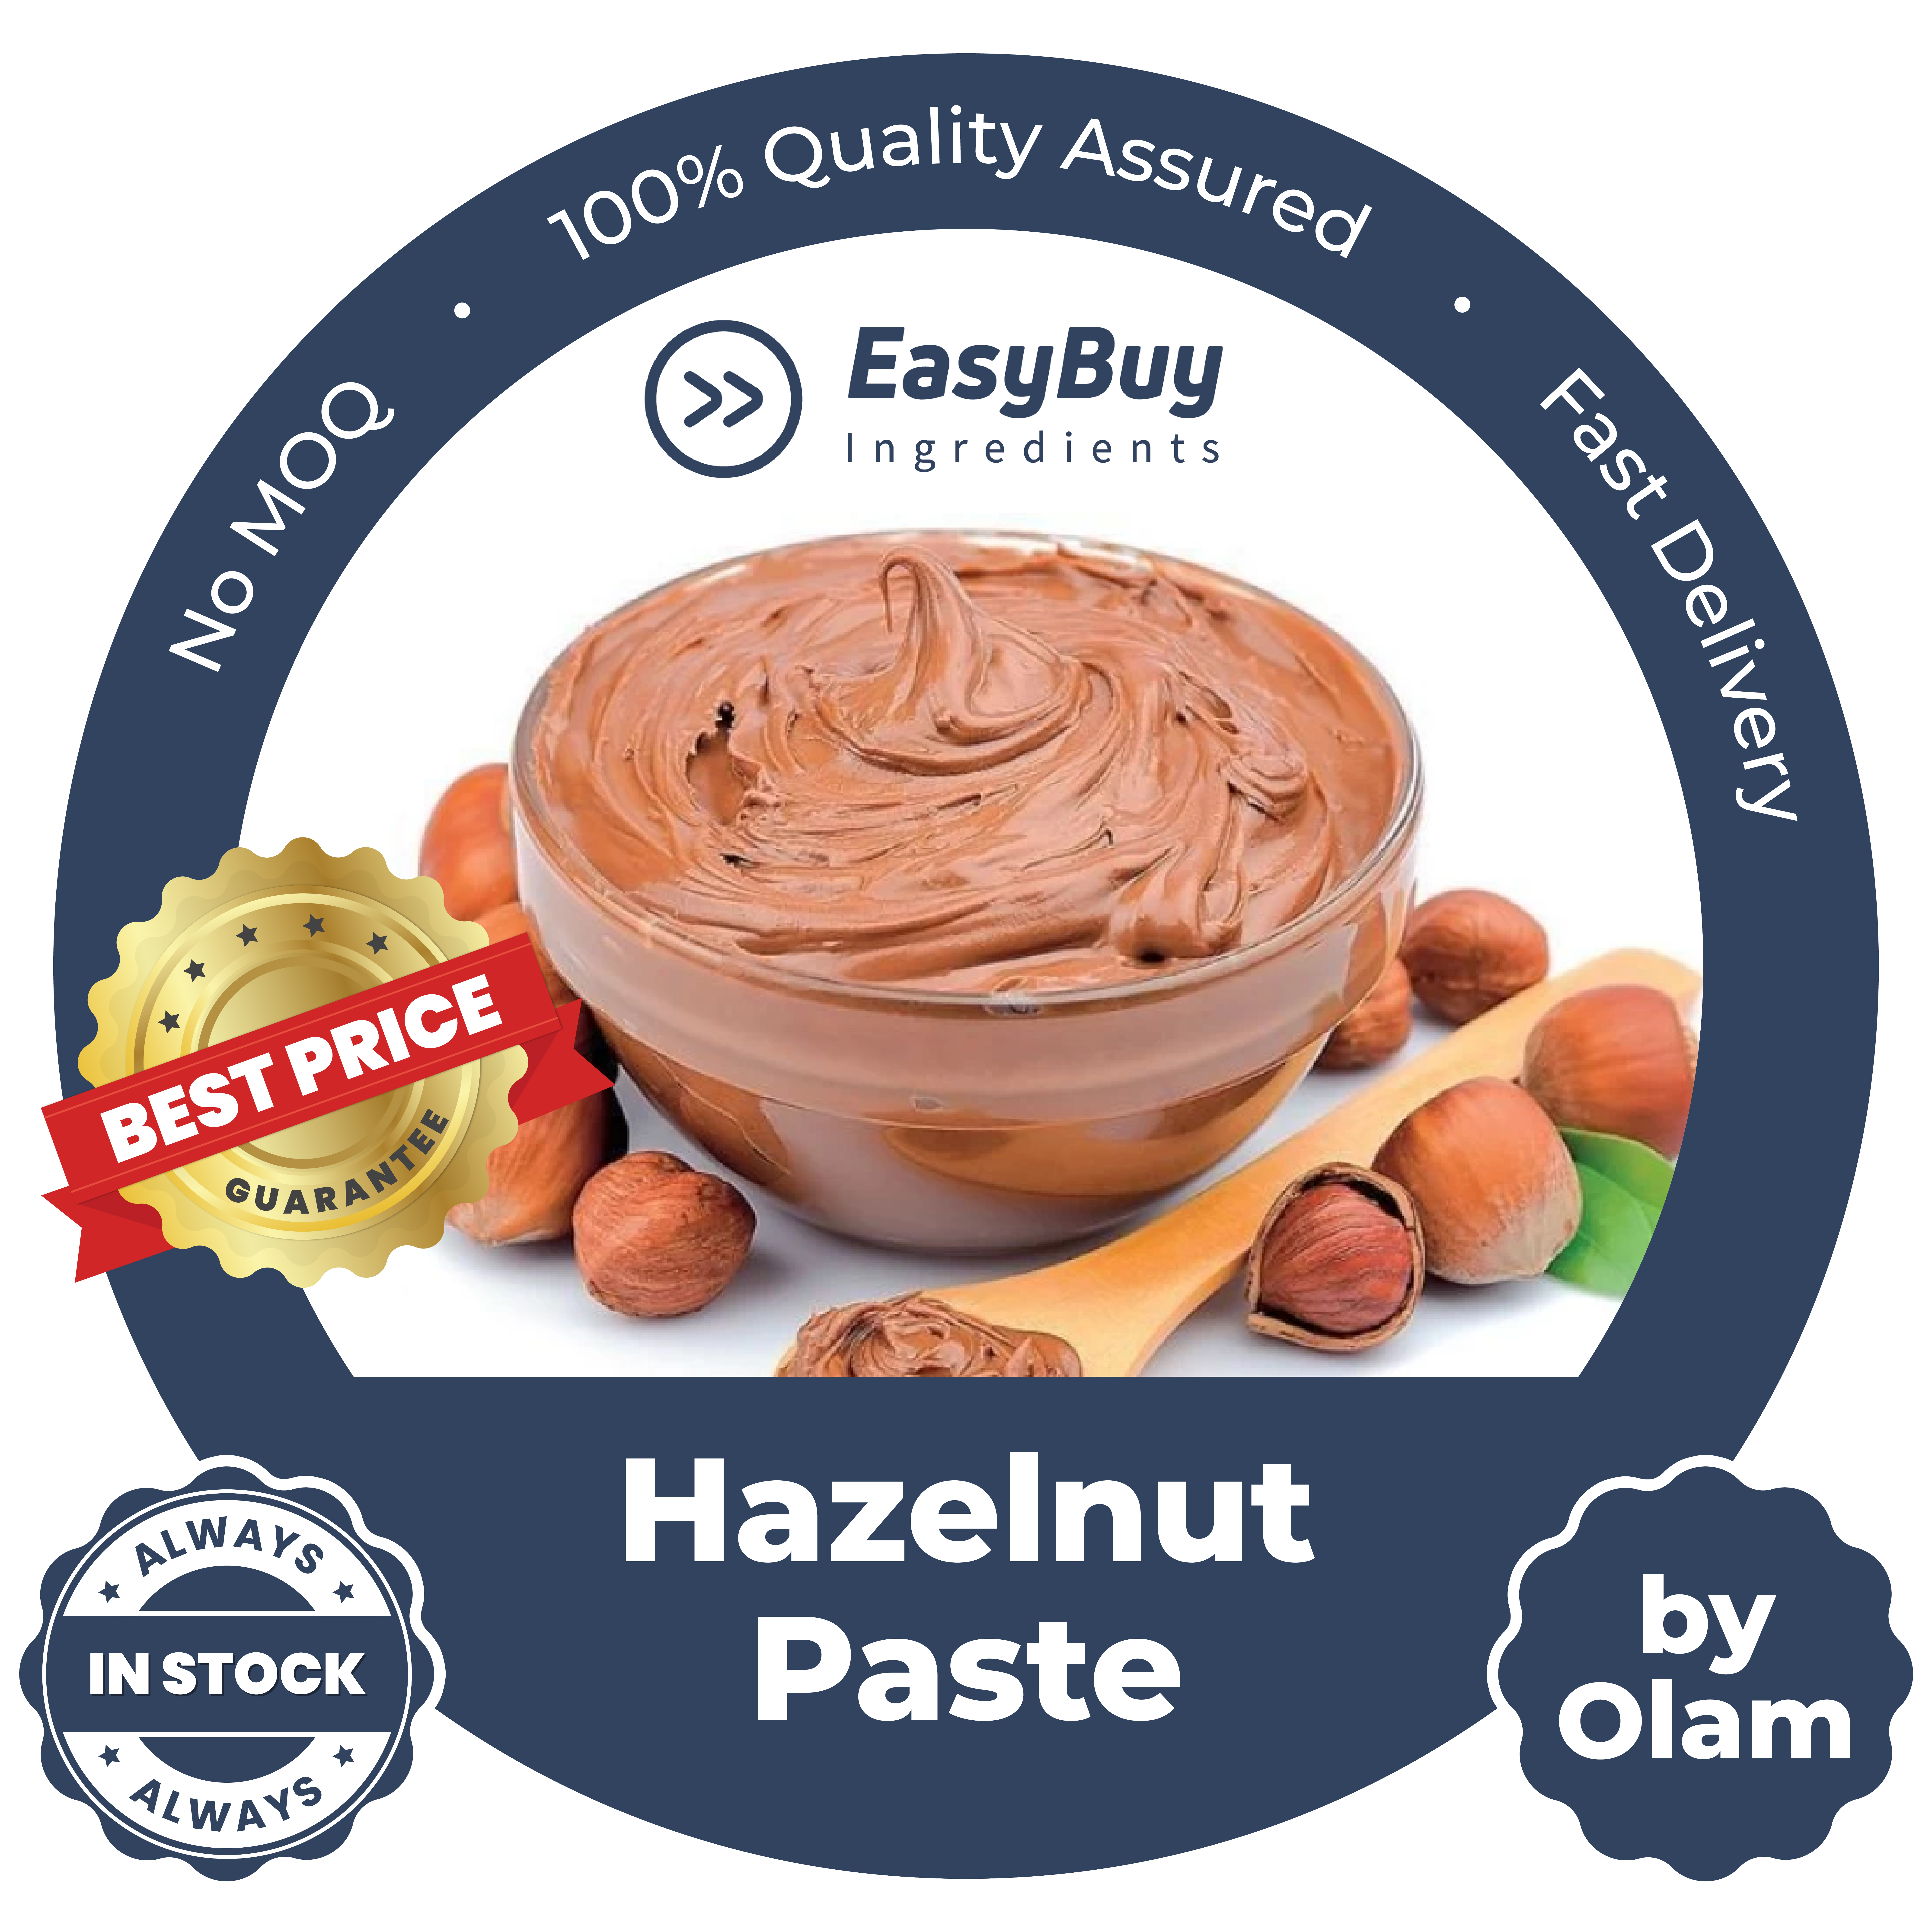 Hazelnut Paste by Olam